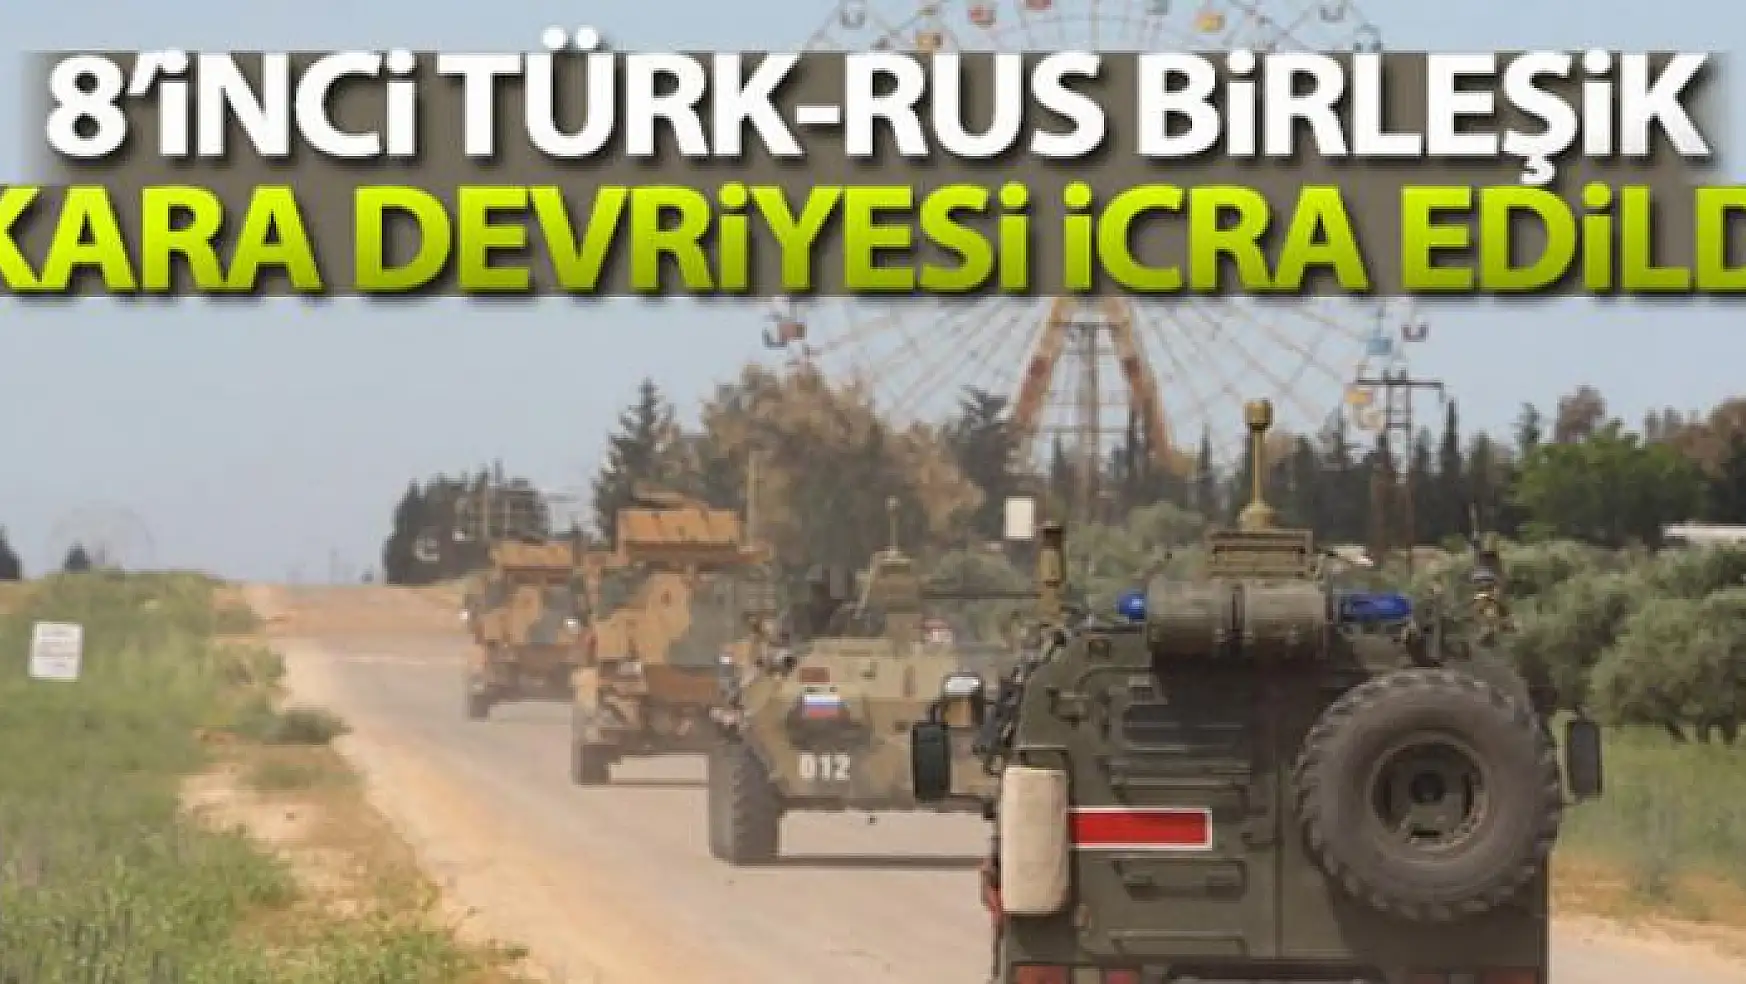 MSB: 'İdlib'te 8'inci Türk-Rus Birleşik Kara Devriyesi icra edildi'